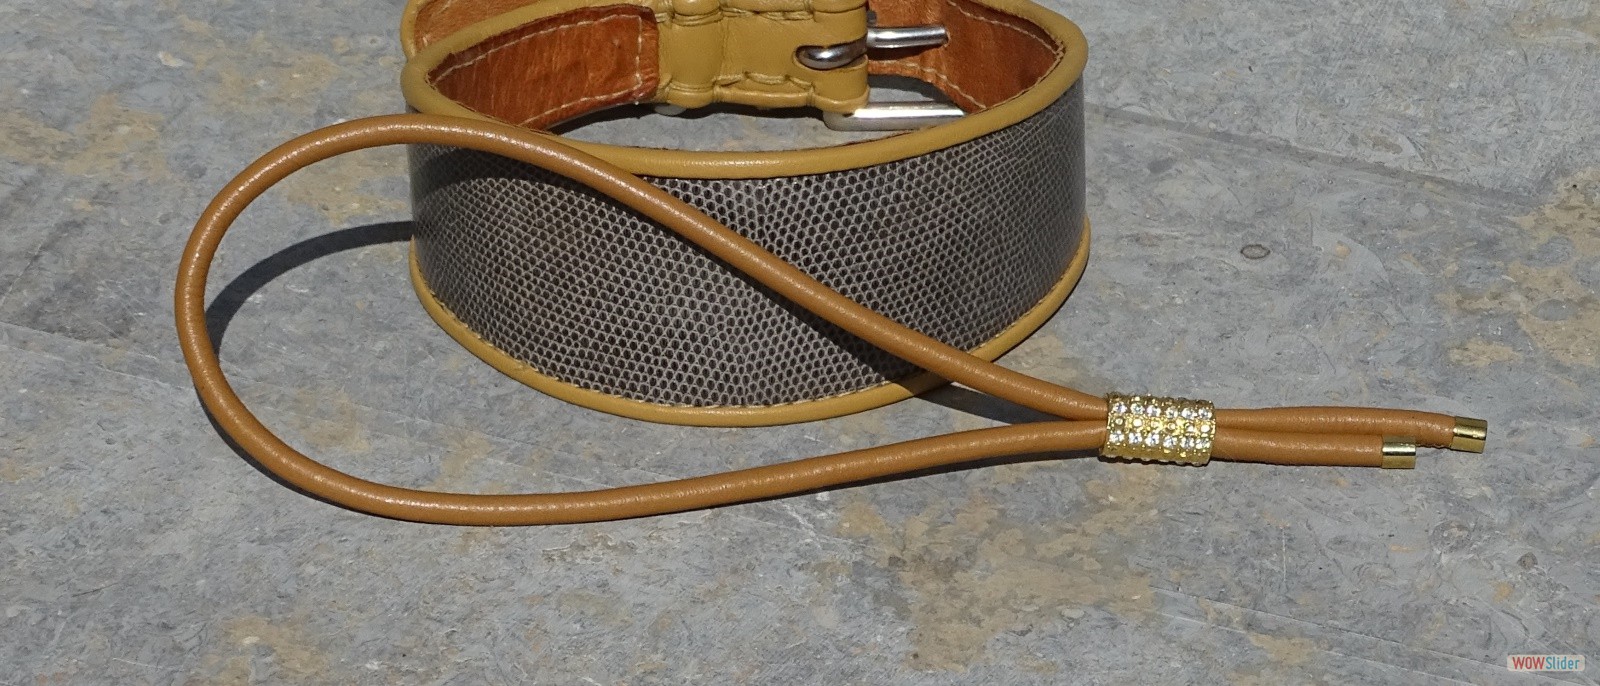 Schmuckband aus Leder zum Kombinieren mit Halsbändern